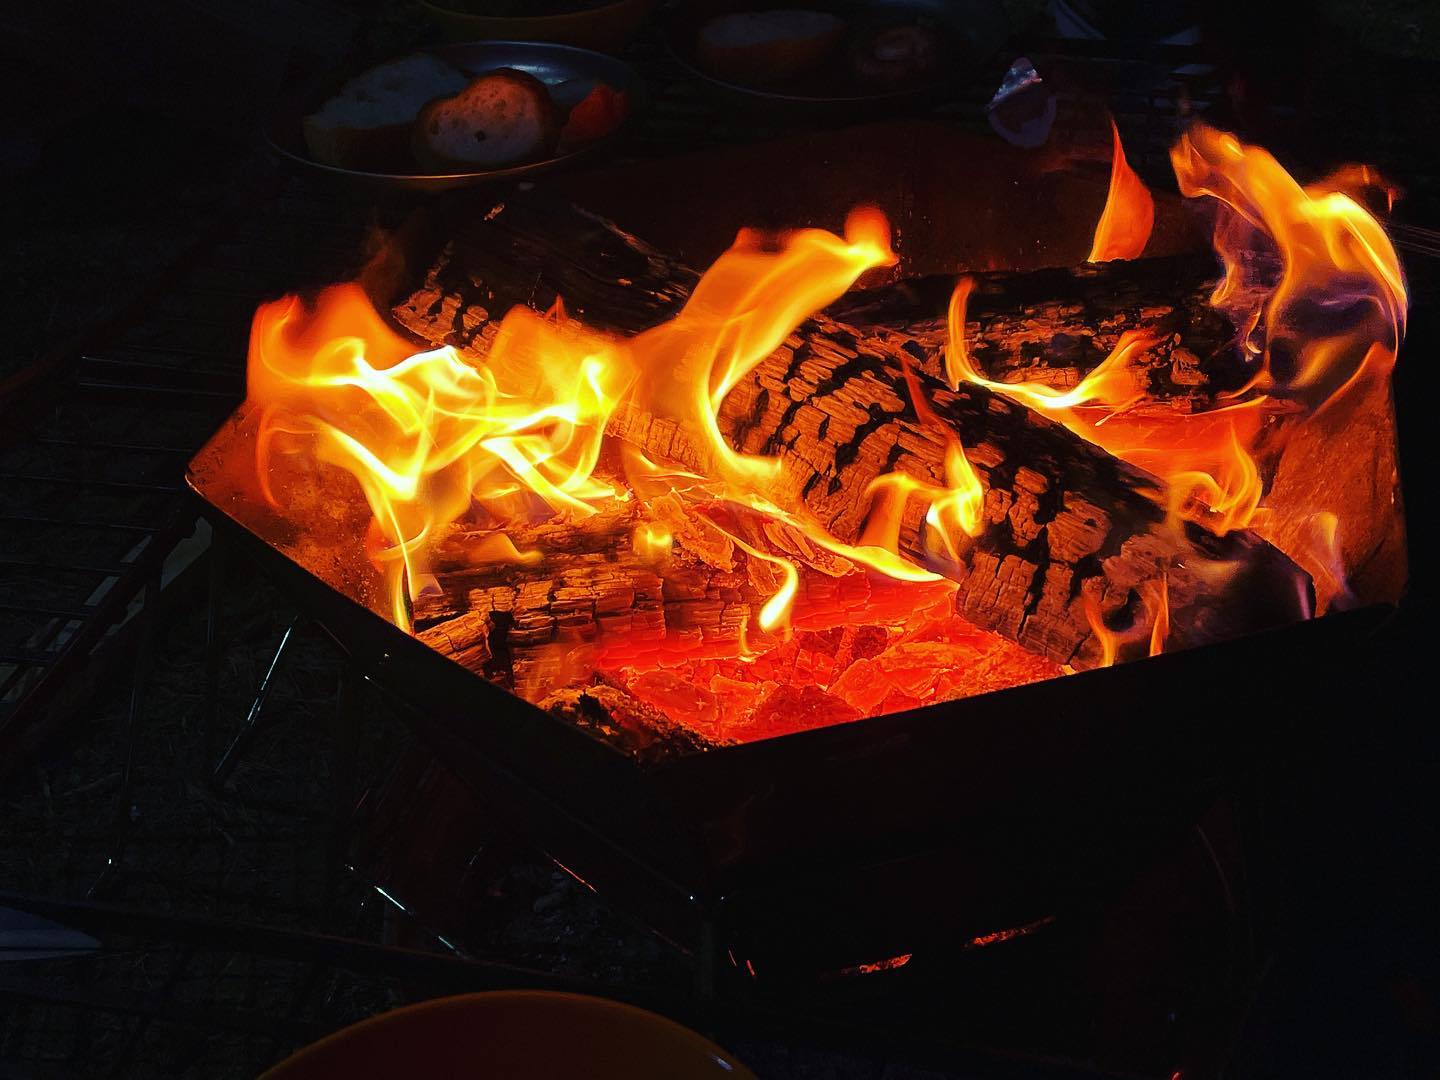 焚き火はやっぱり落ち着くな#camping #bonfire #焚き火 #キャンプ #4cam